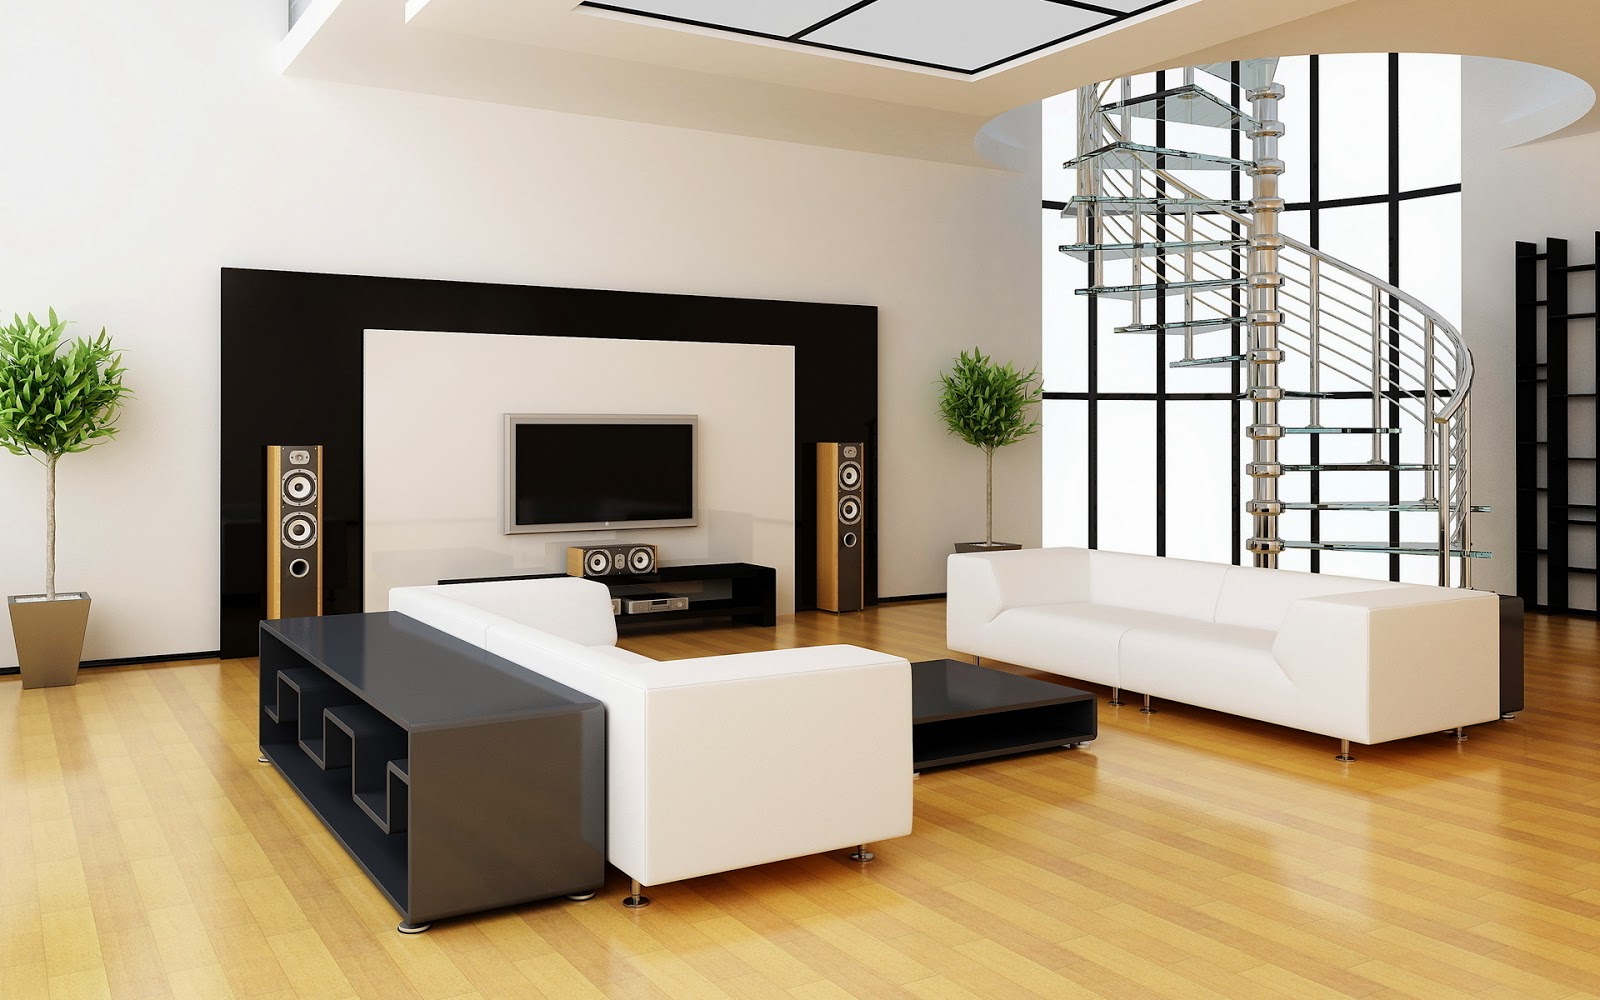 Ide Desain Rumah Minimalis Desain Interior Rumah Minimalis Terbaru 2015